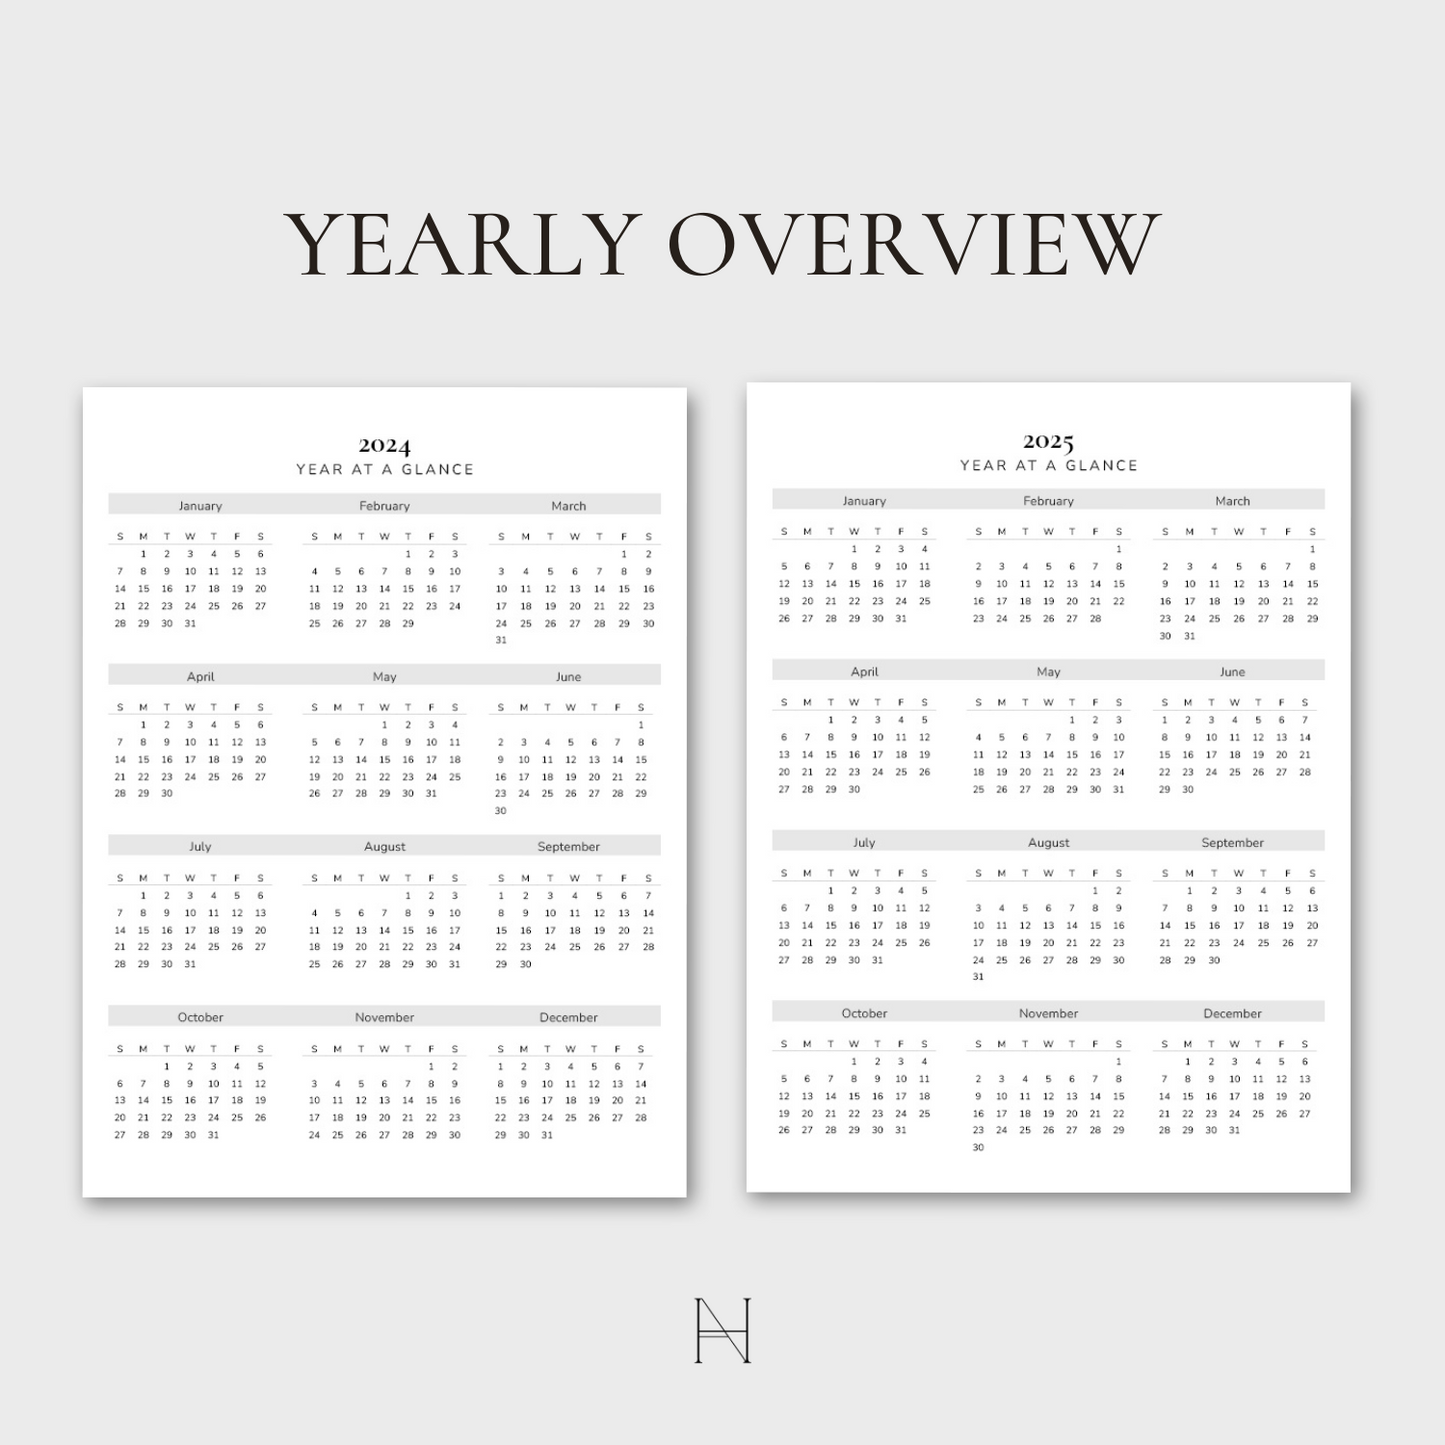 2024 Ultimate Editable Calendar